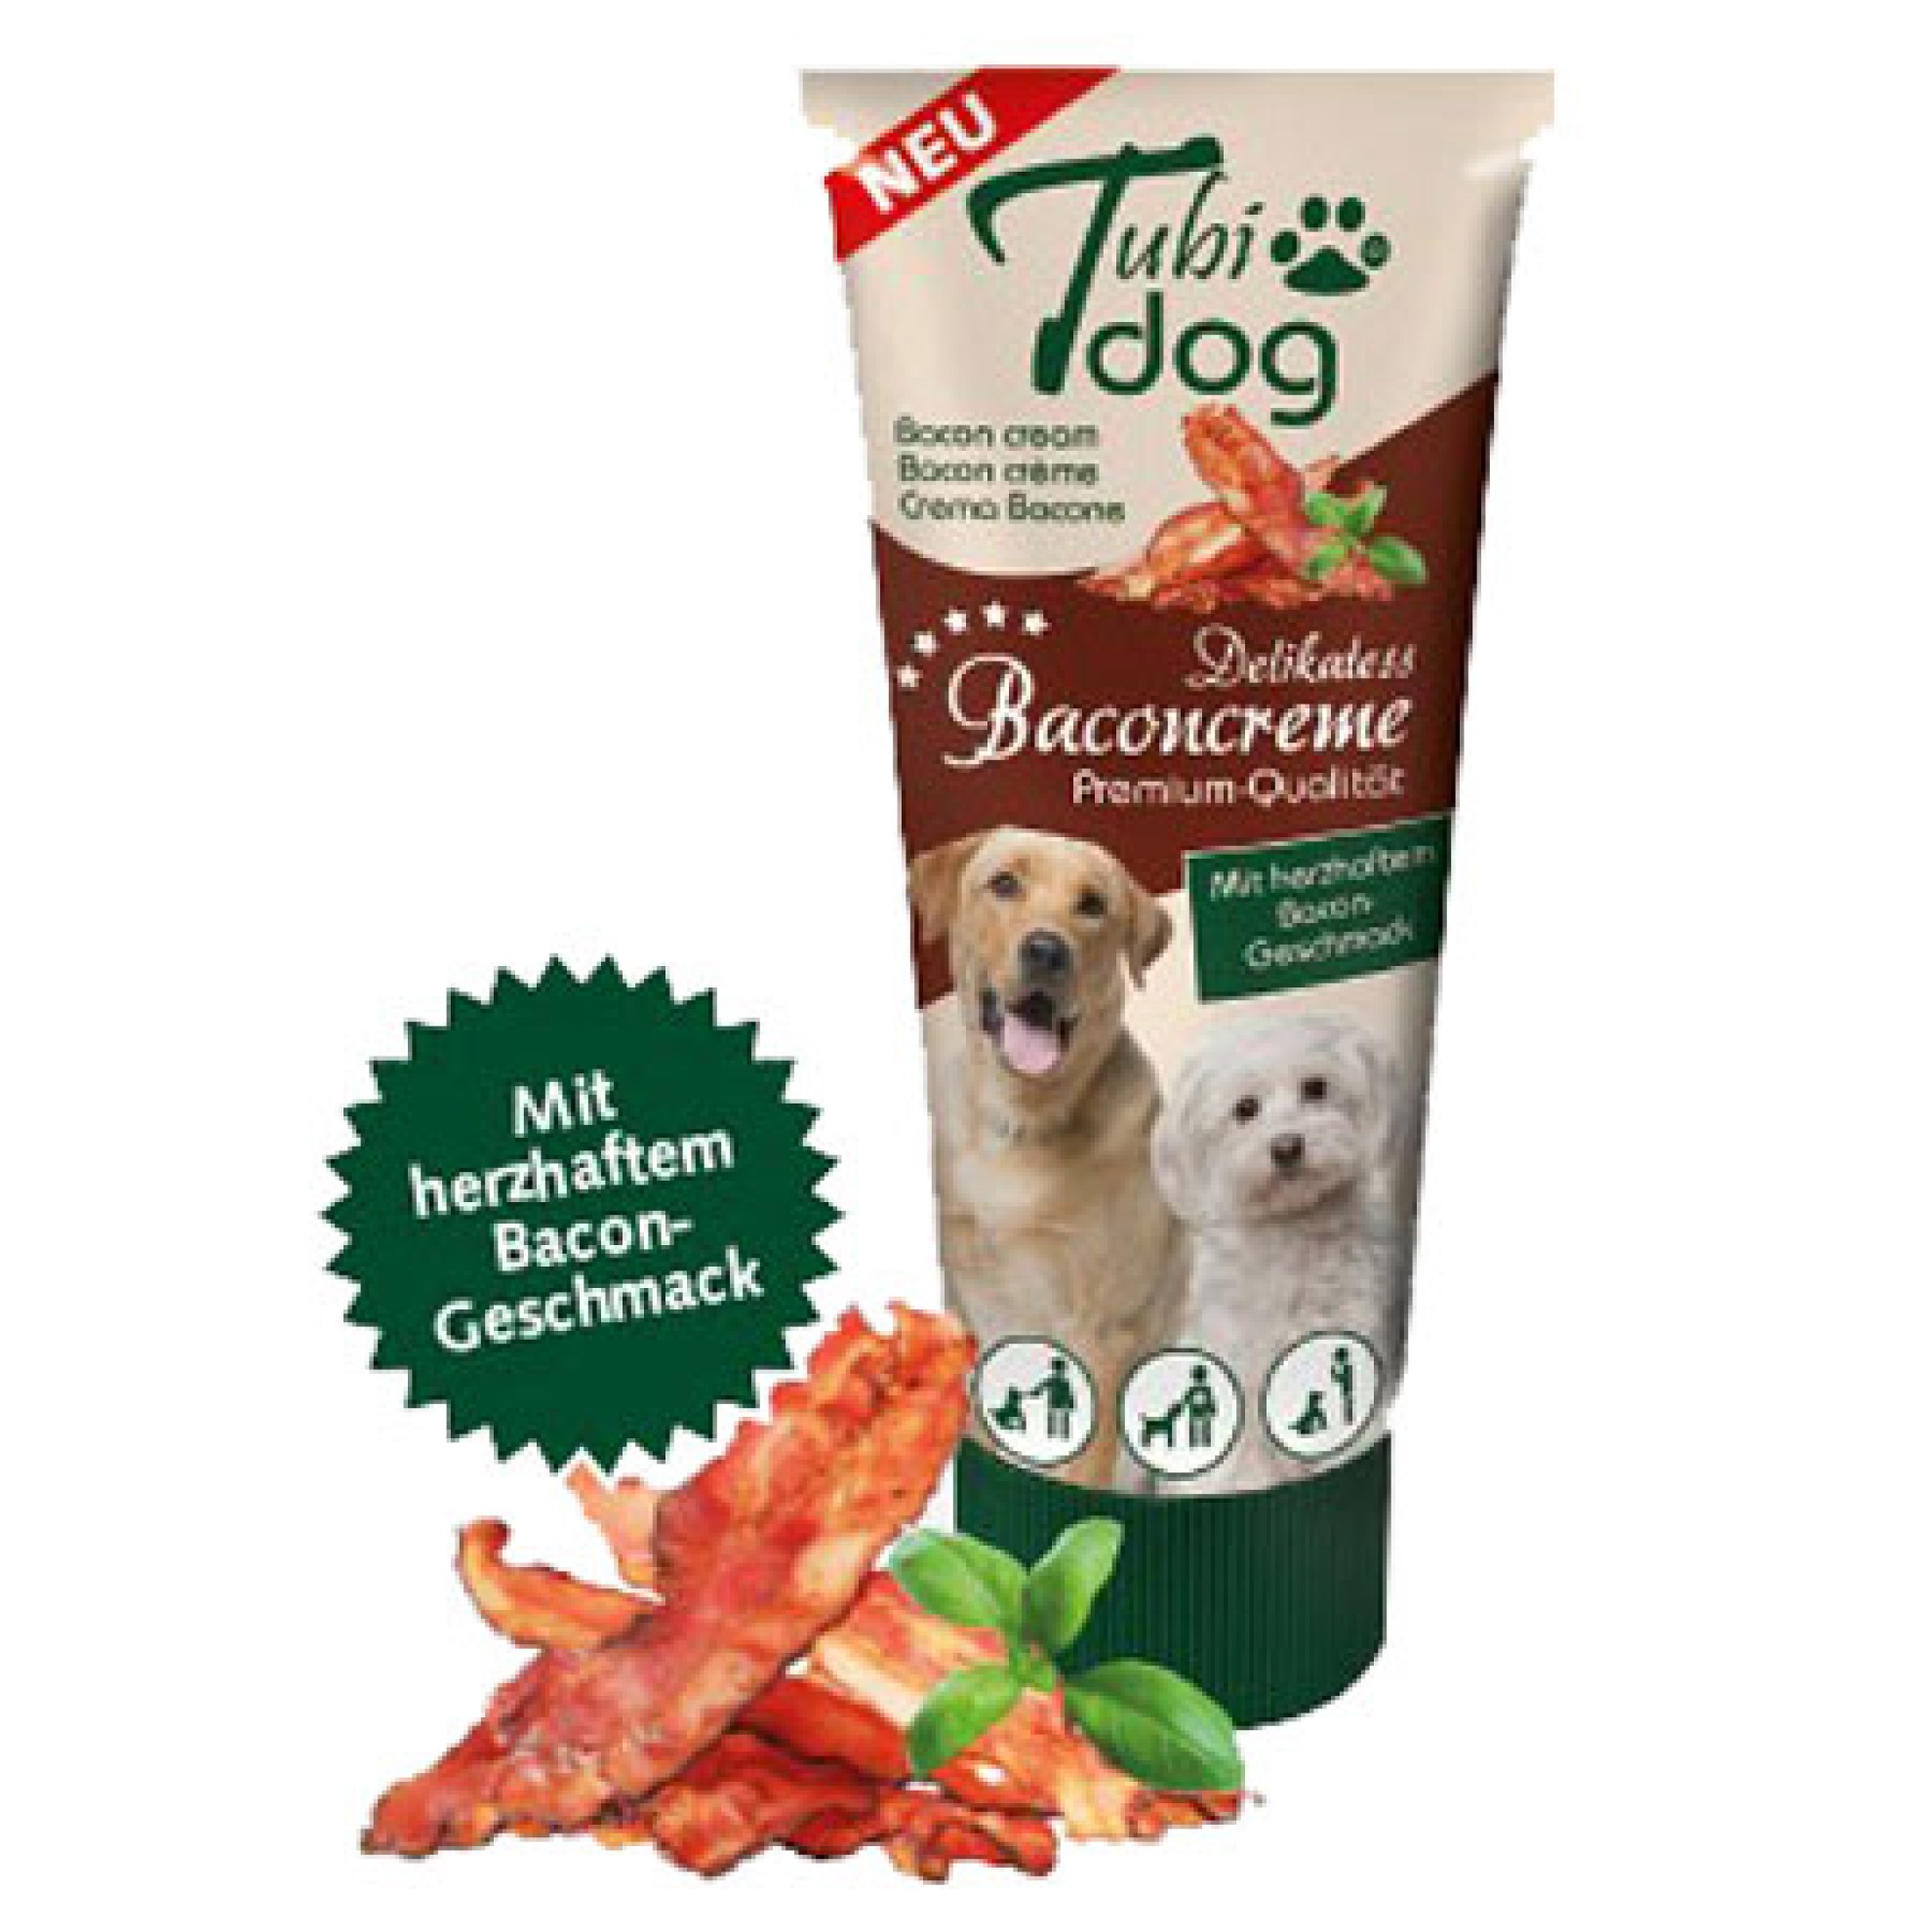 Tubidog Baconcreme für Hunde, BaconLeberwurst Hund, HundeLeckerli